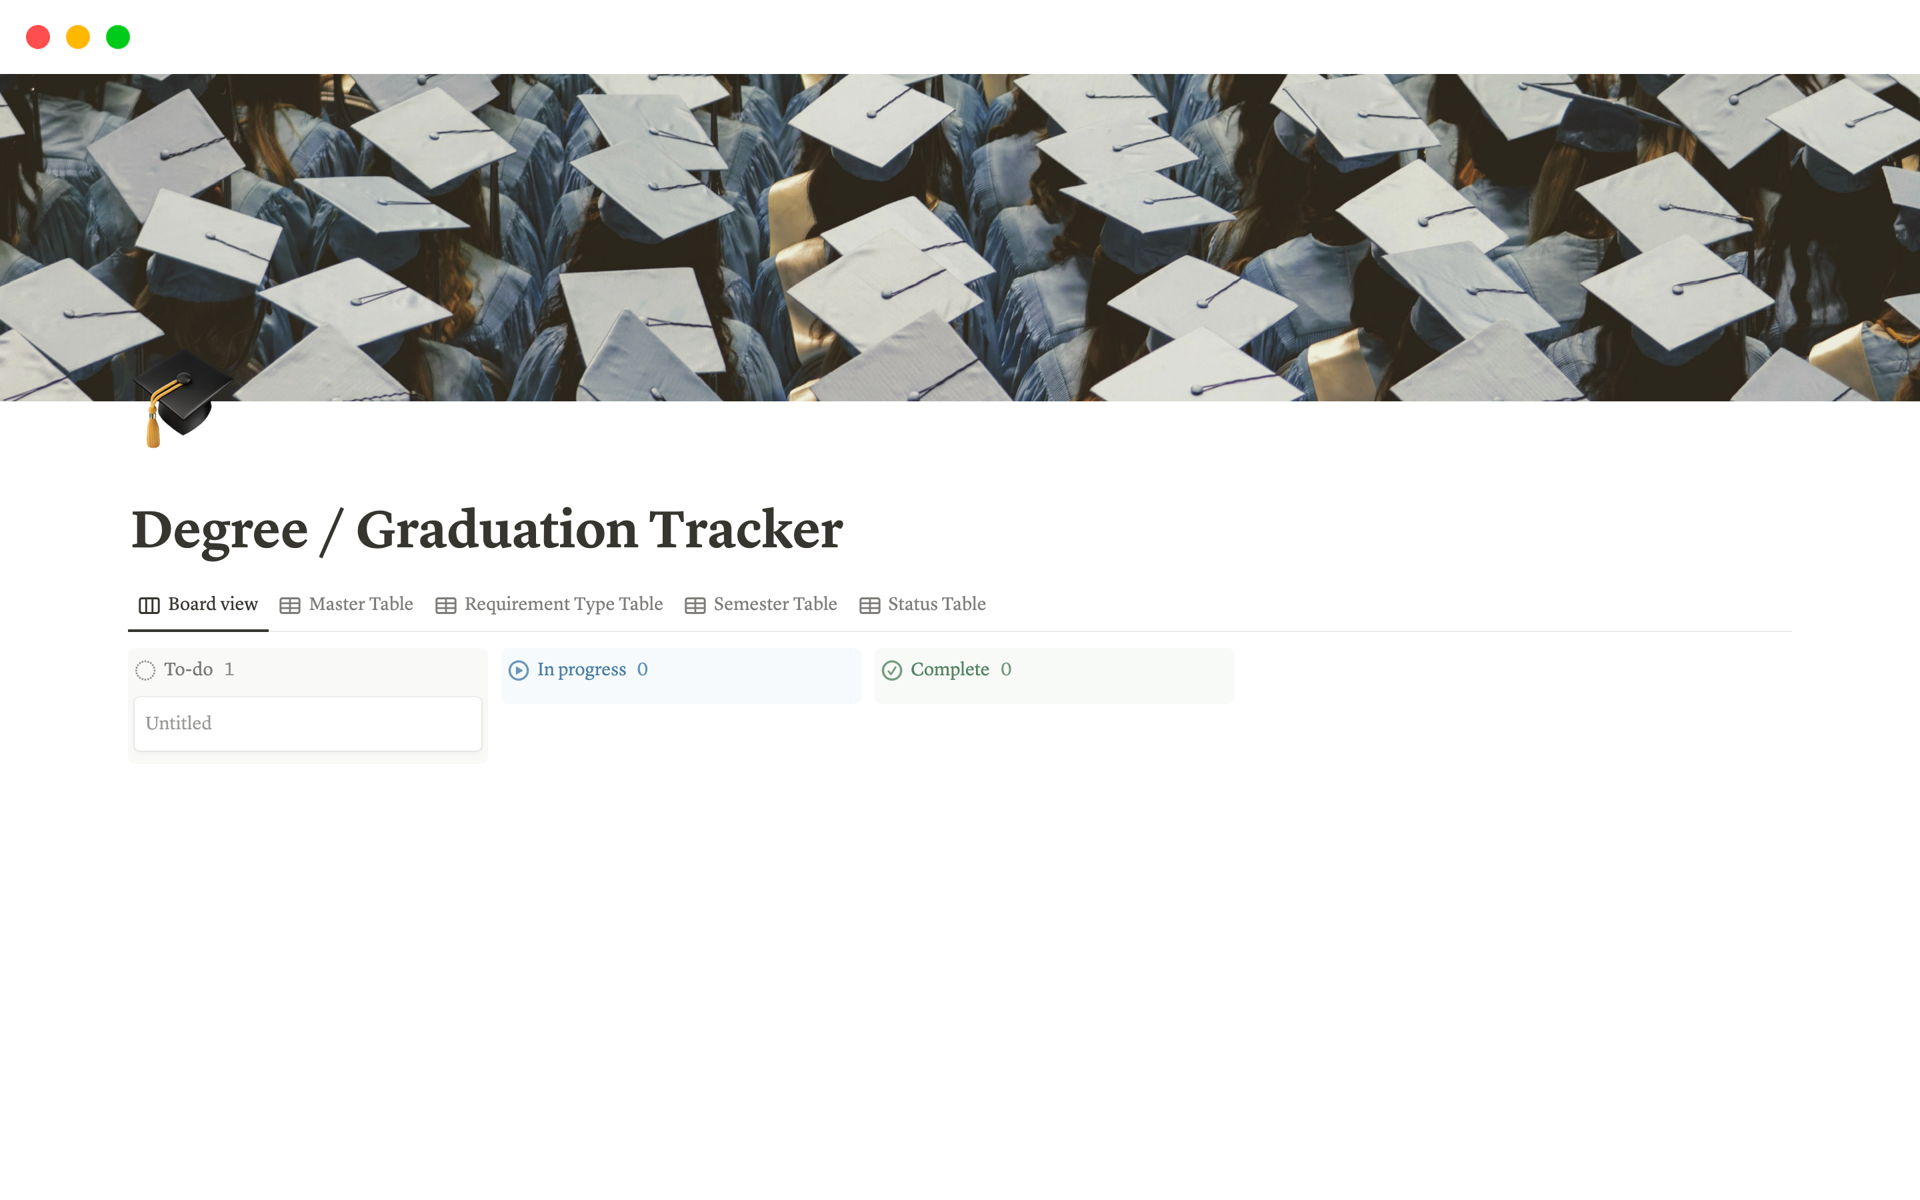 Vista previa de una plantilla para Degree / Graduation Tracker